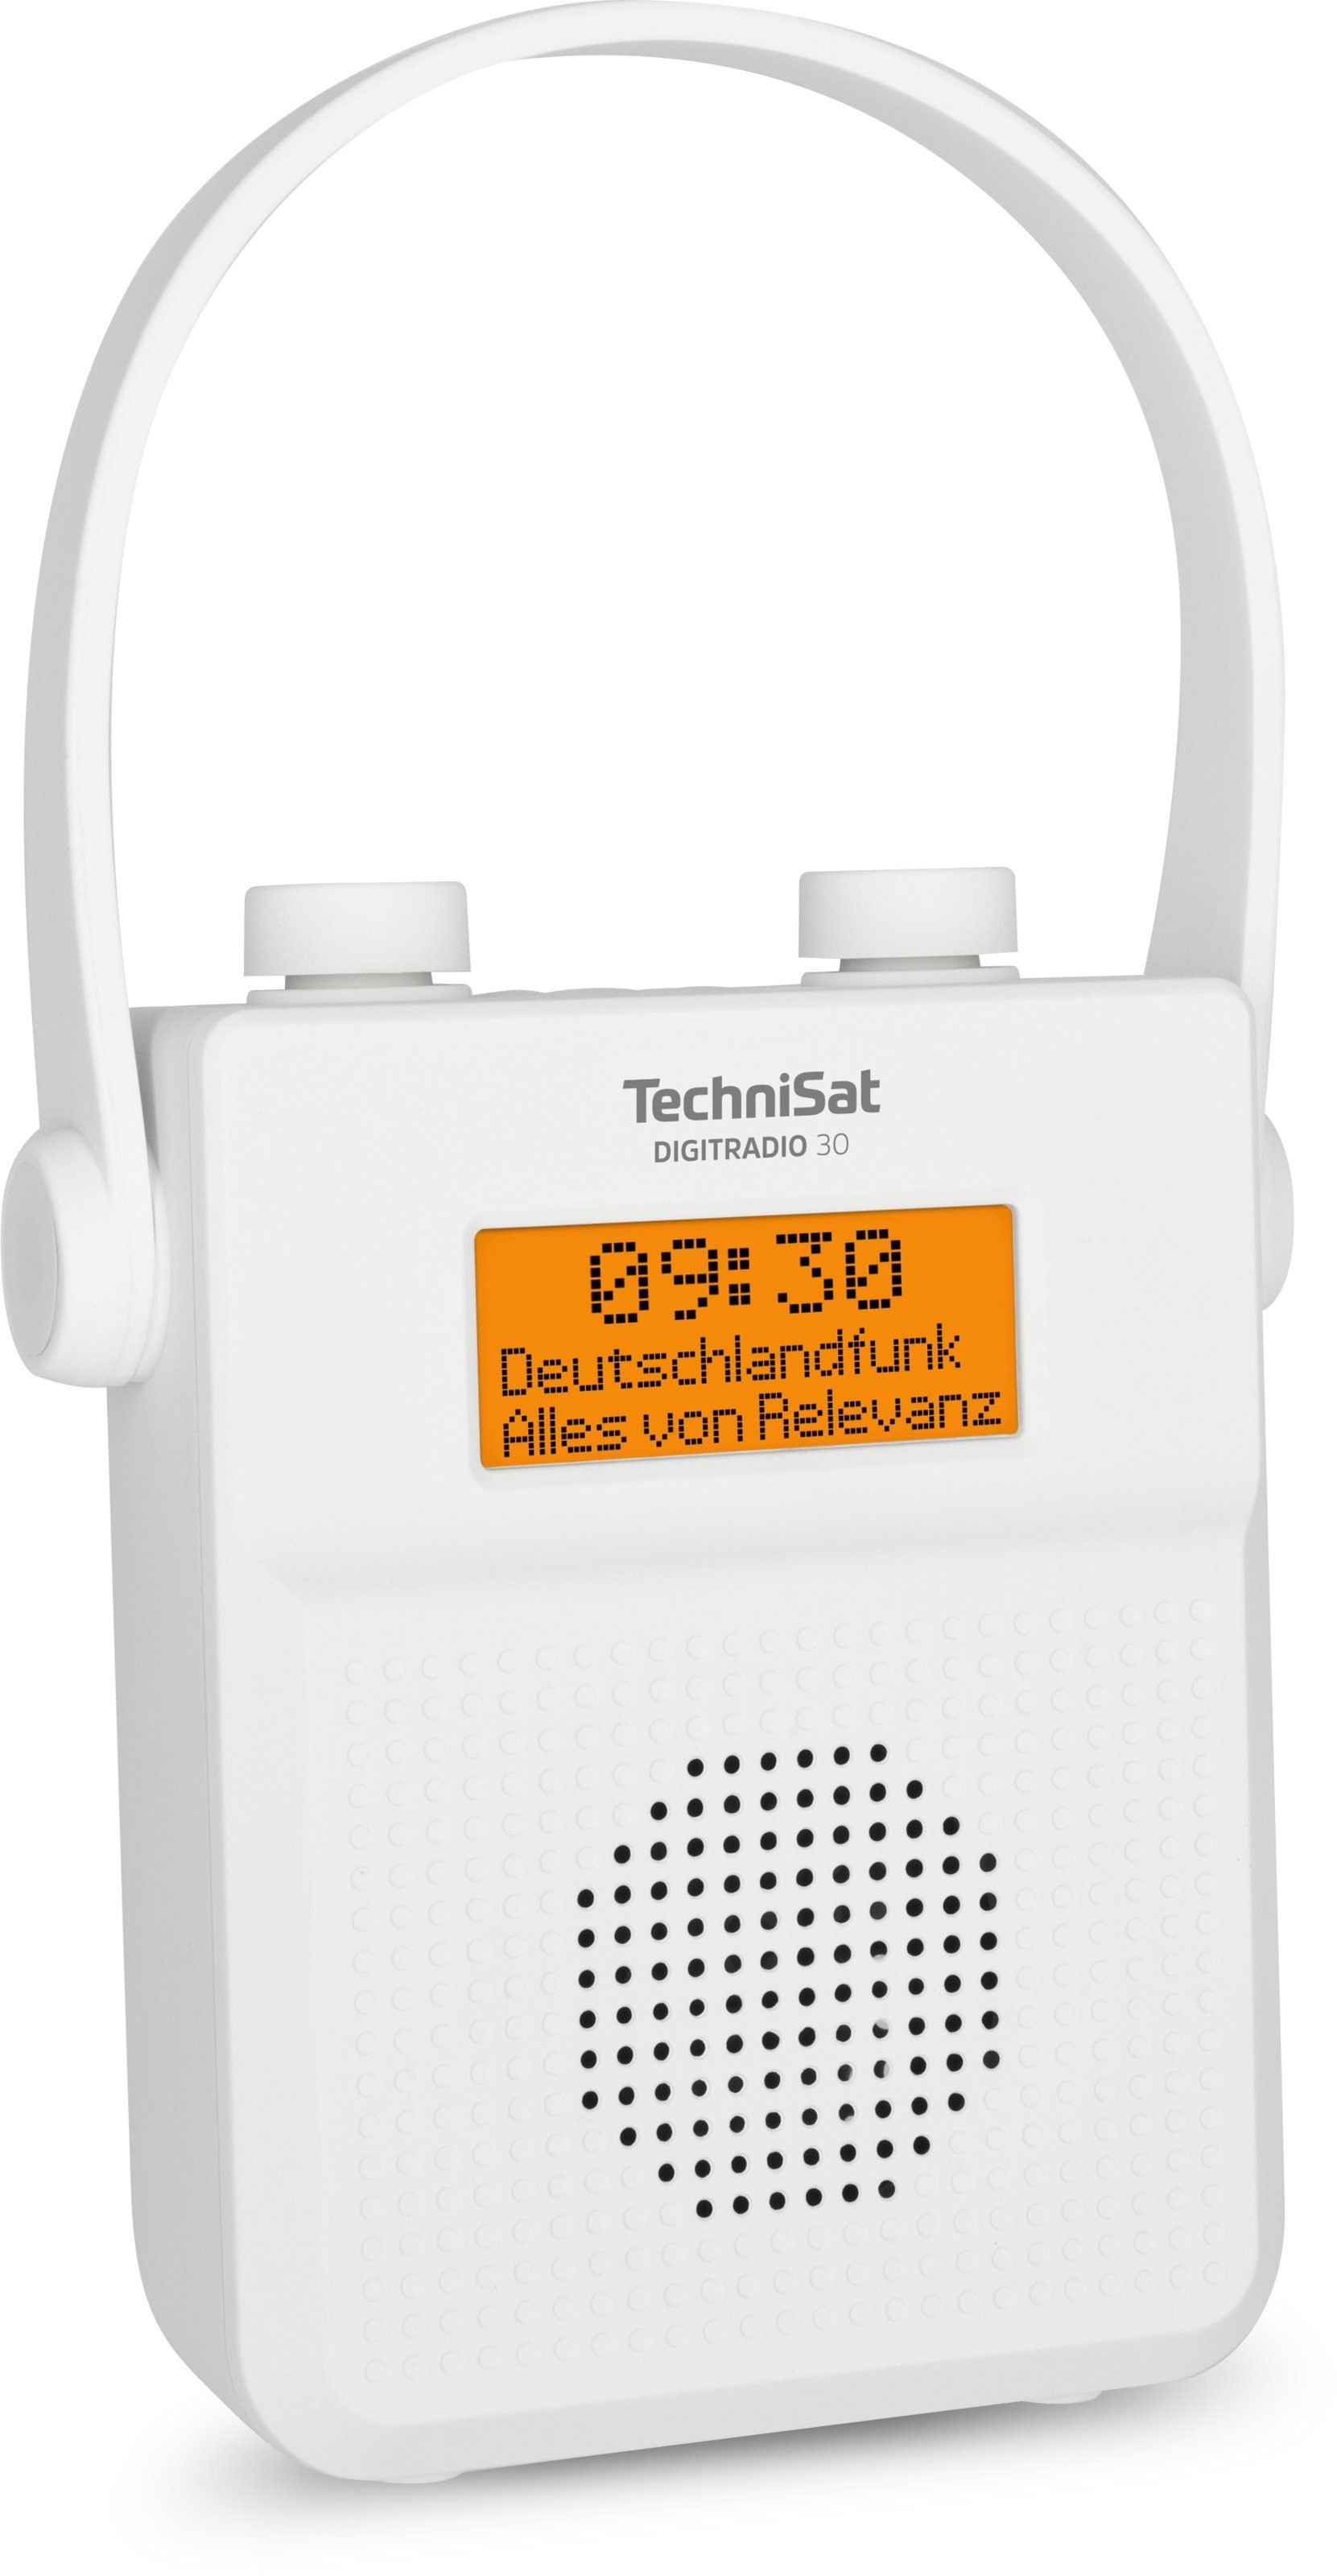 Digitalradio 30 (DAB), TechniSat weiß Duschradio tragbar, W, 2,00 DIGITRADIO (Digitalradio RDS, UKW-Radio (DAB) mit Bluetooth-Audiostreaming) wasserdicht,